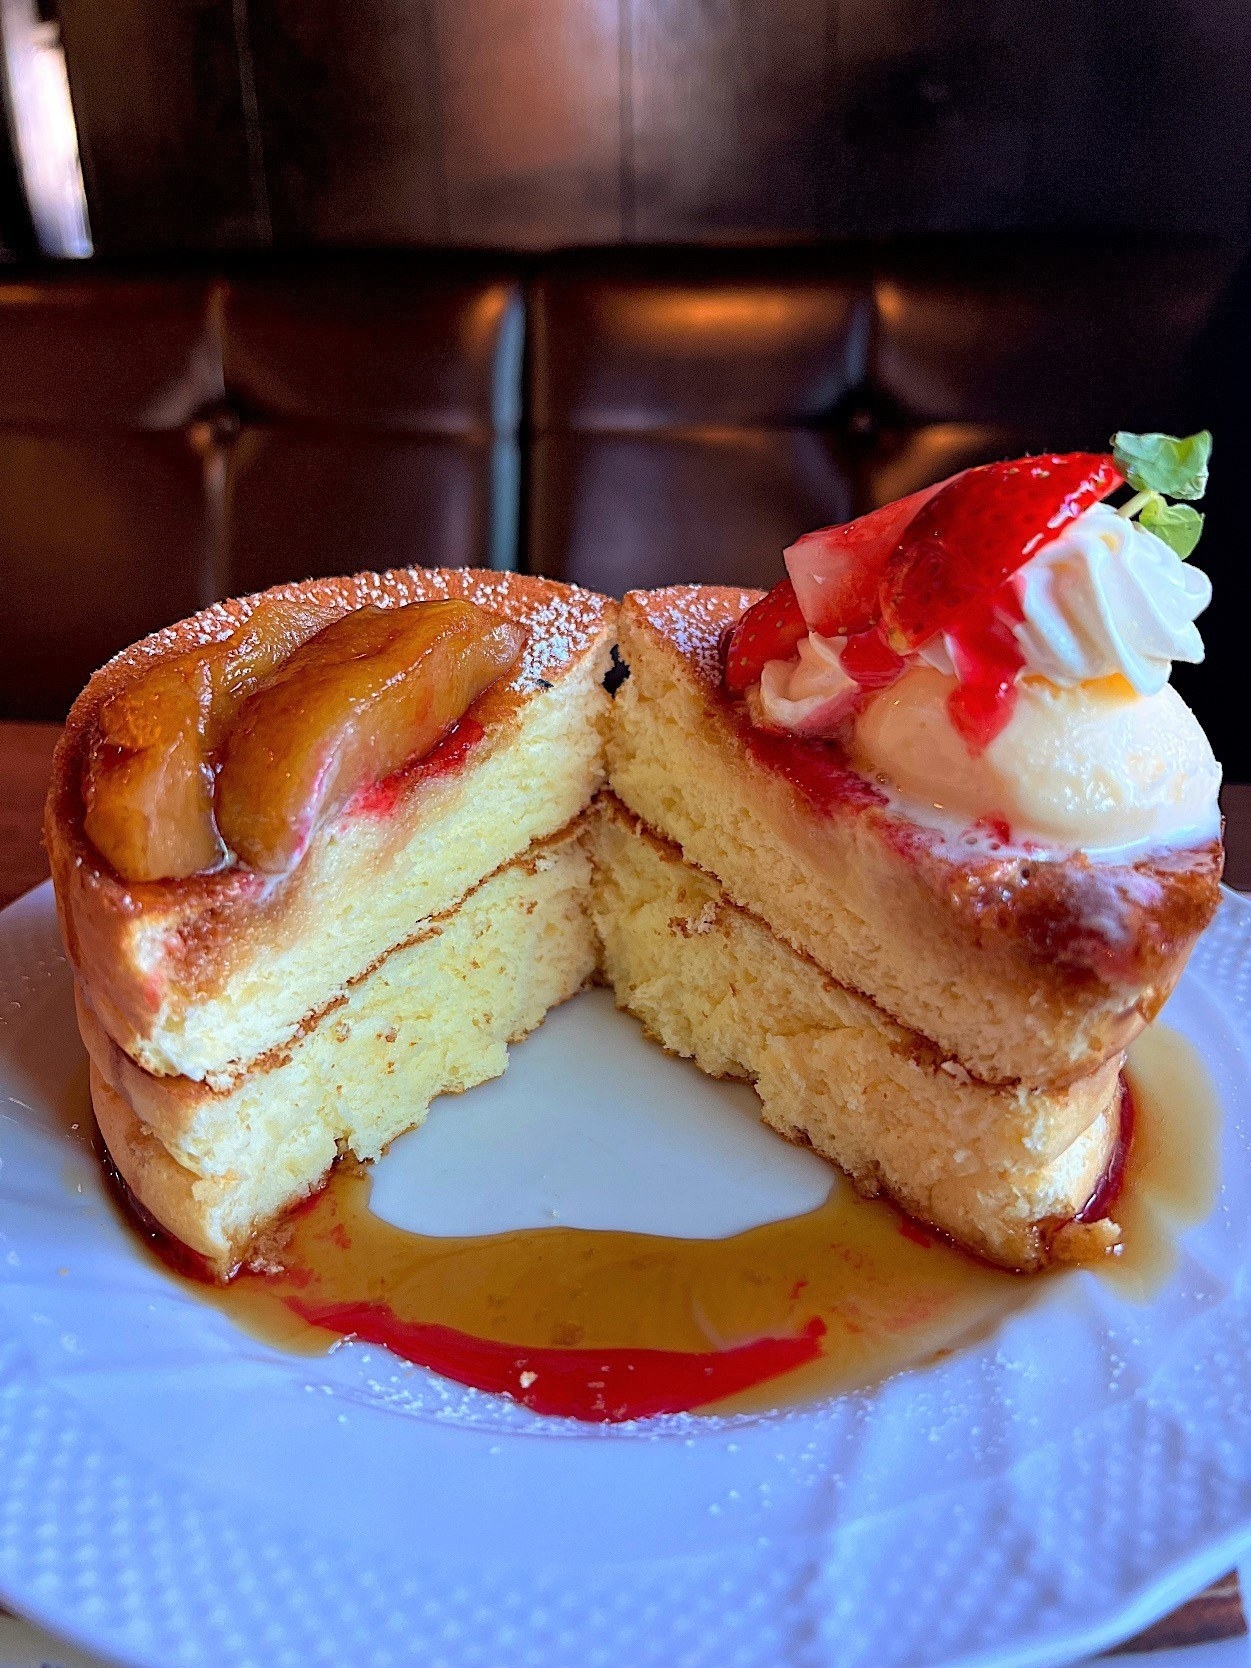 星野珈琲のおすすめスイーツ「キャラメルりんごと苺のスフレパンケーキ」値段は1100円です。